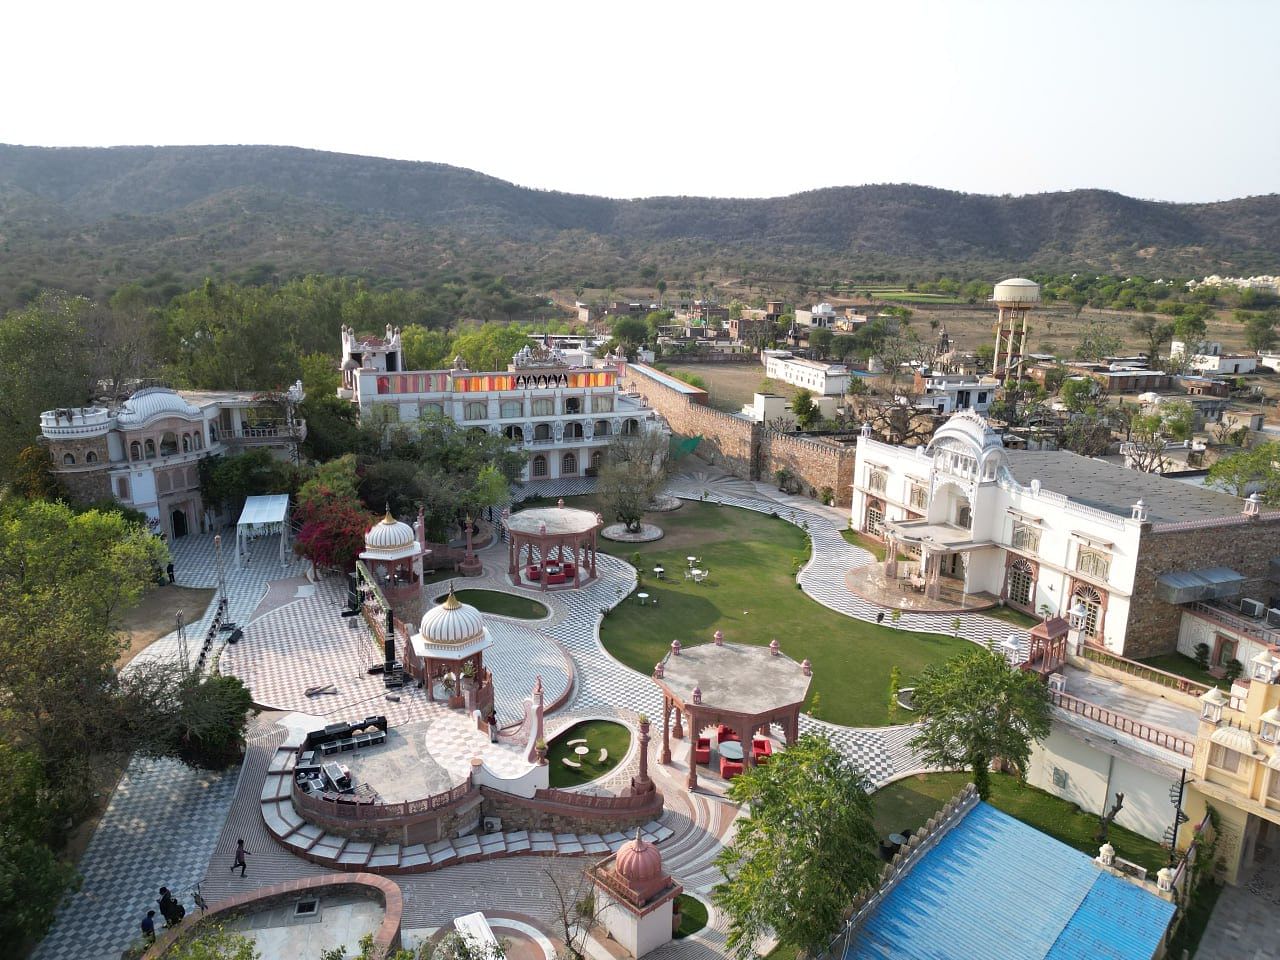 Lohagarh Fort Resort in Kukas, Jaipur